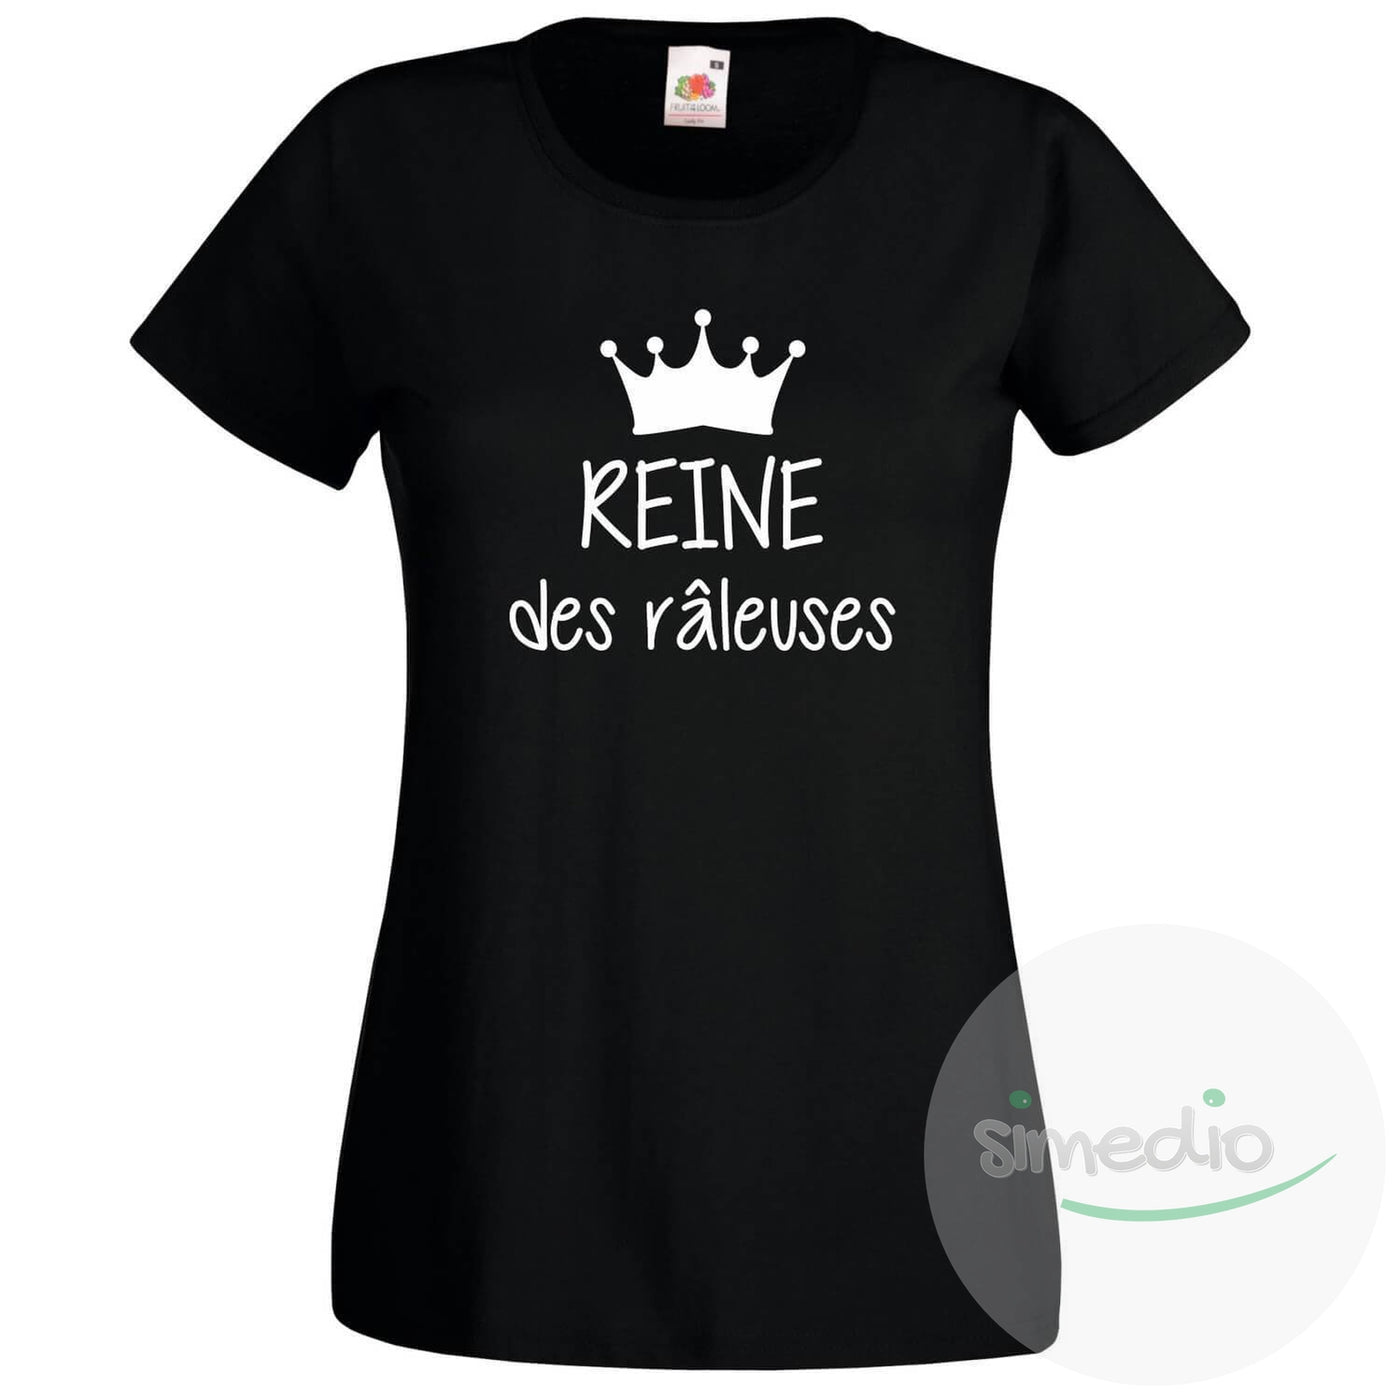 Ensemble famille des tee shirts : REINE / PRINCESSE des râleuses, ROI / PRINCE des râleurs, Noir, Reine / S, - SiMEDIO